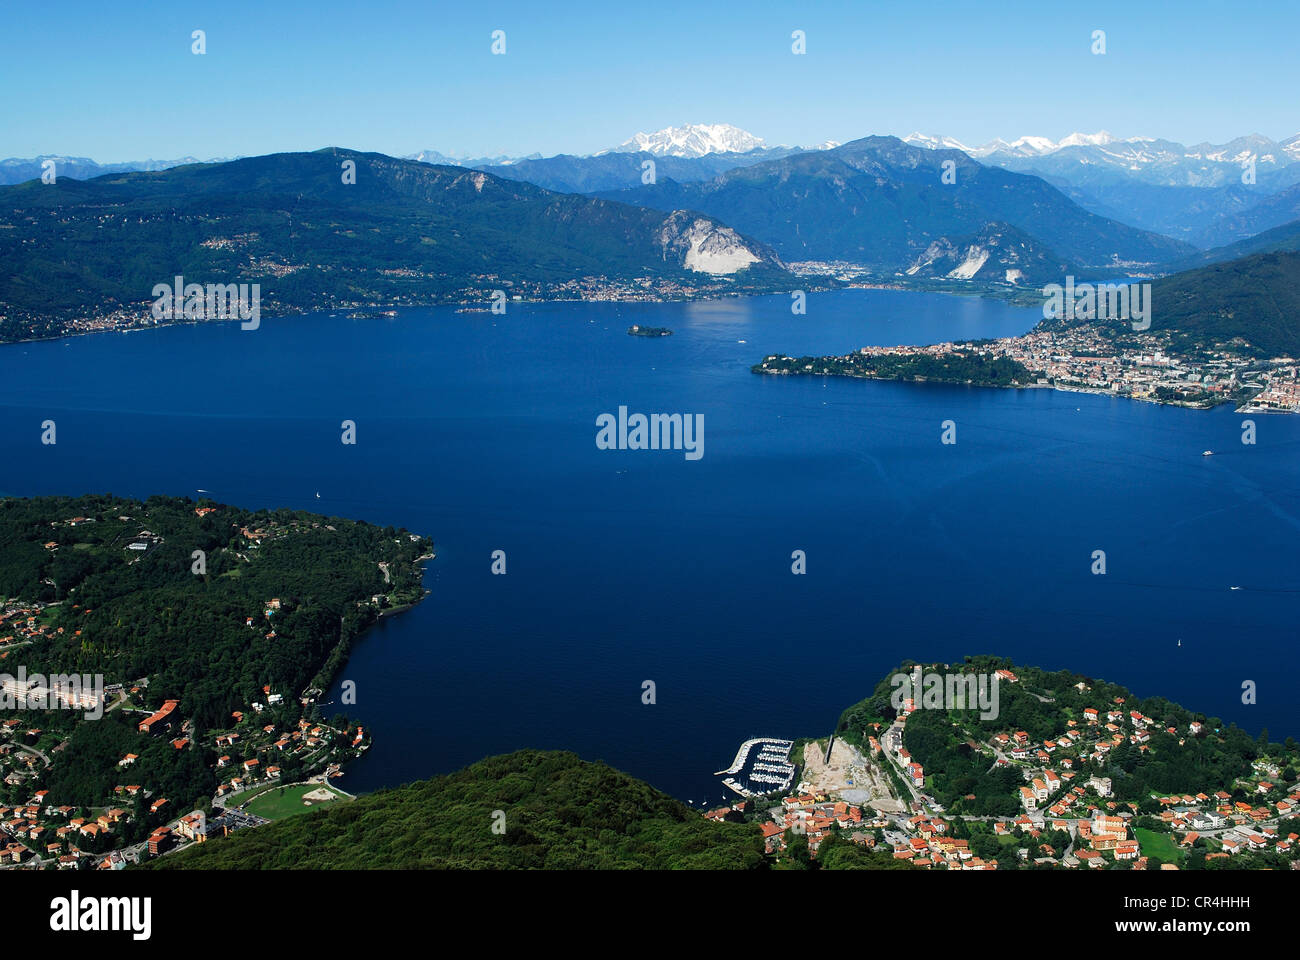 Italy, Lombardy, Lake Maggiore, Laveno Mombello, the lake seen from the top of Sasso del Ferro Mountain Stock Photo